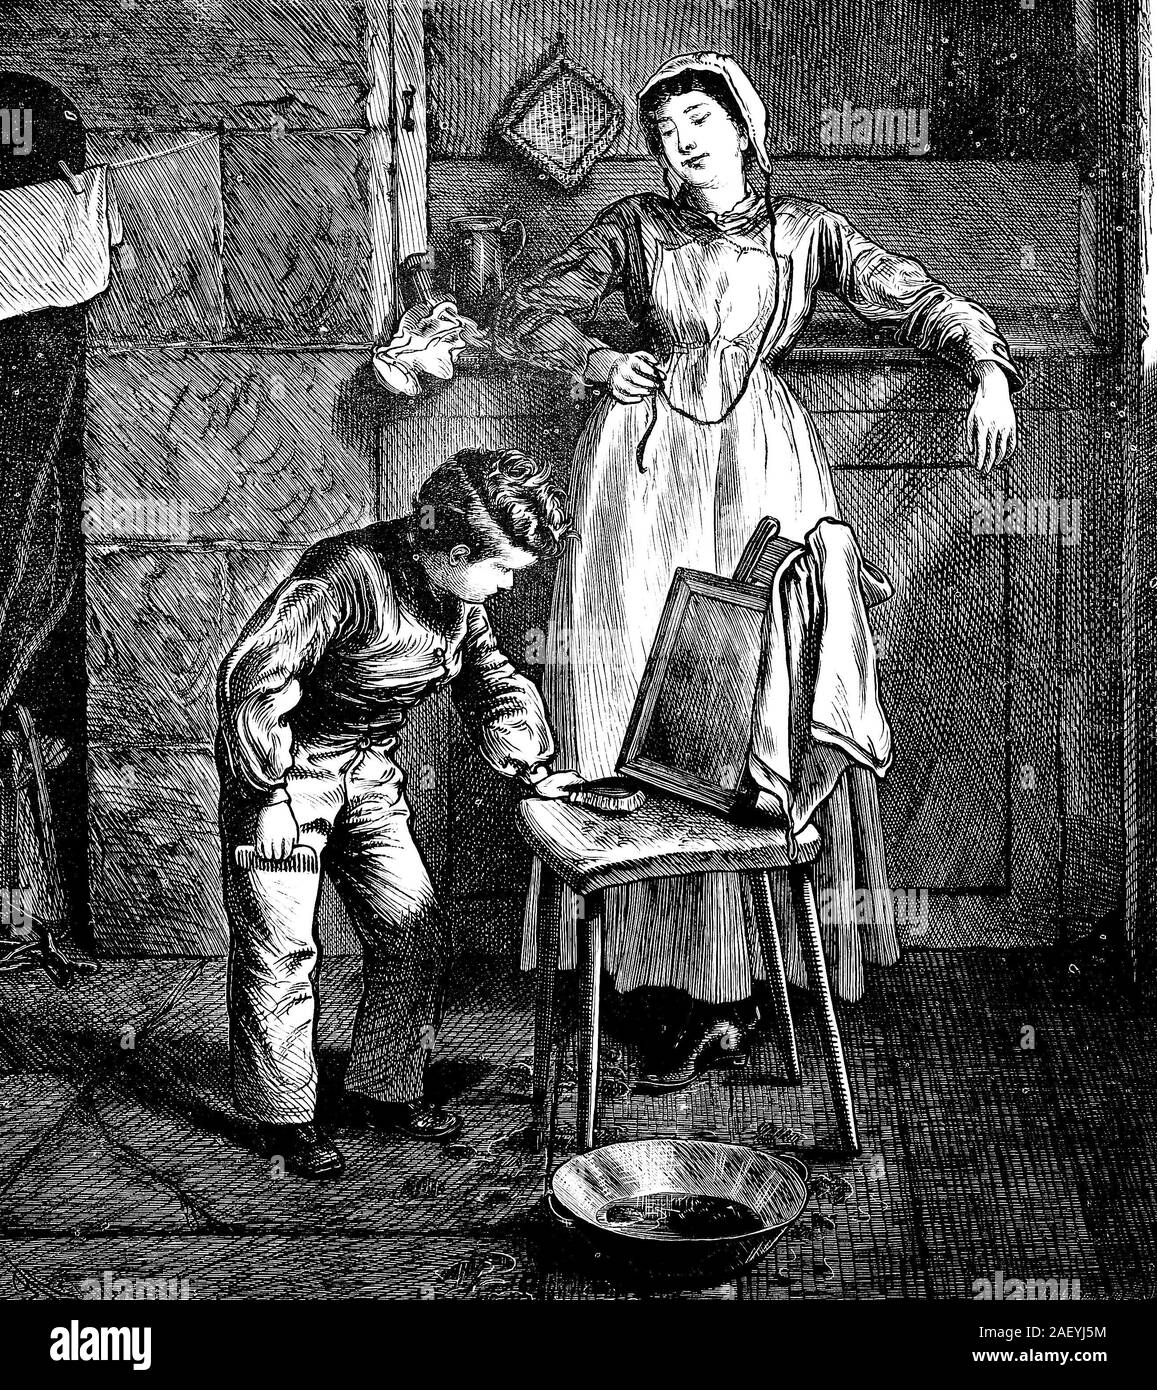 Junge in 1800s das Aufstehen am Morgen und bereitet sich für den Tag, pflegen, während Mutter Uhren. Stockfoto